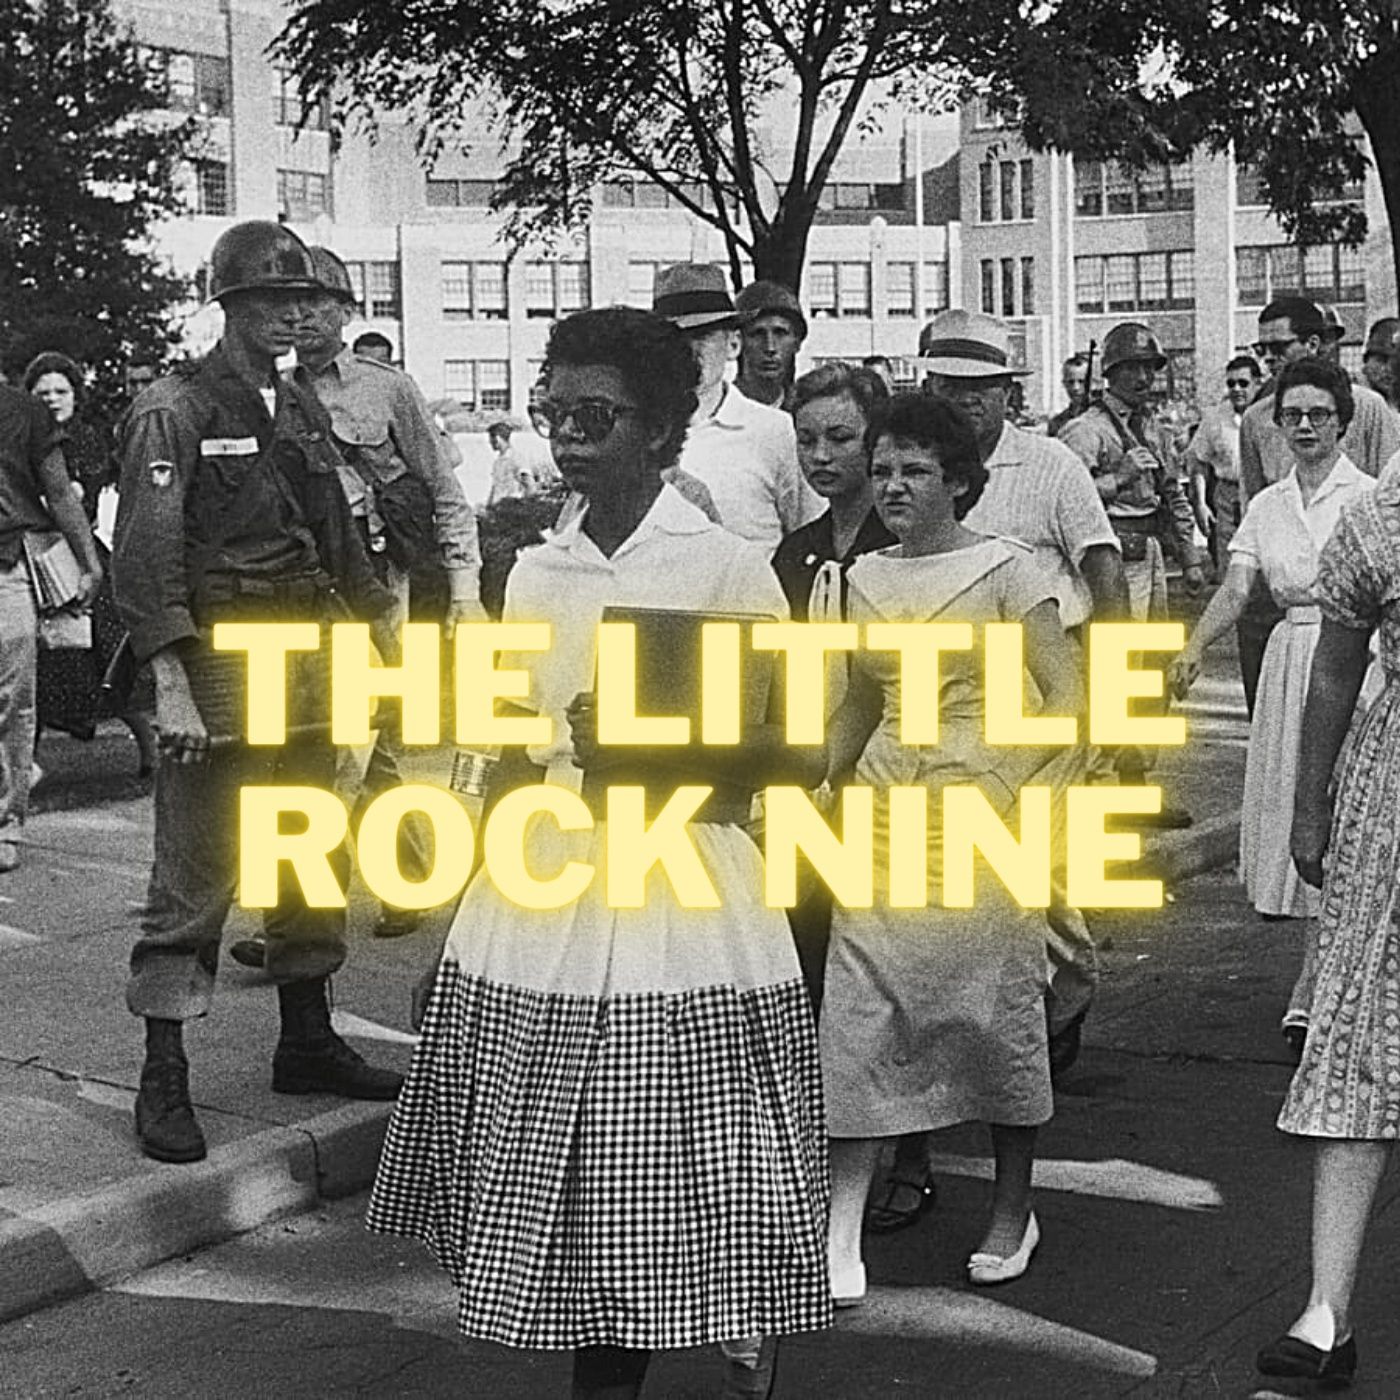 The Little Rock Nine